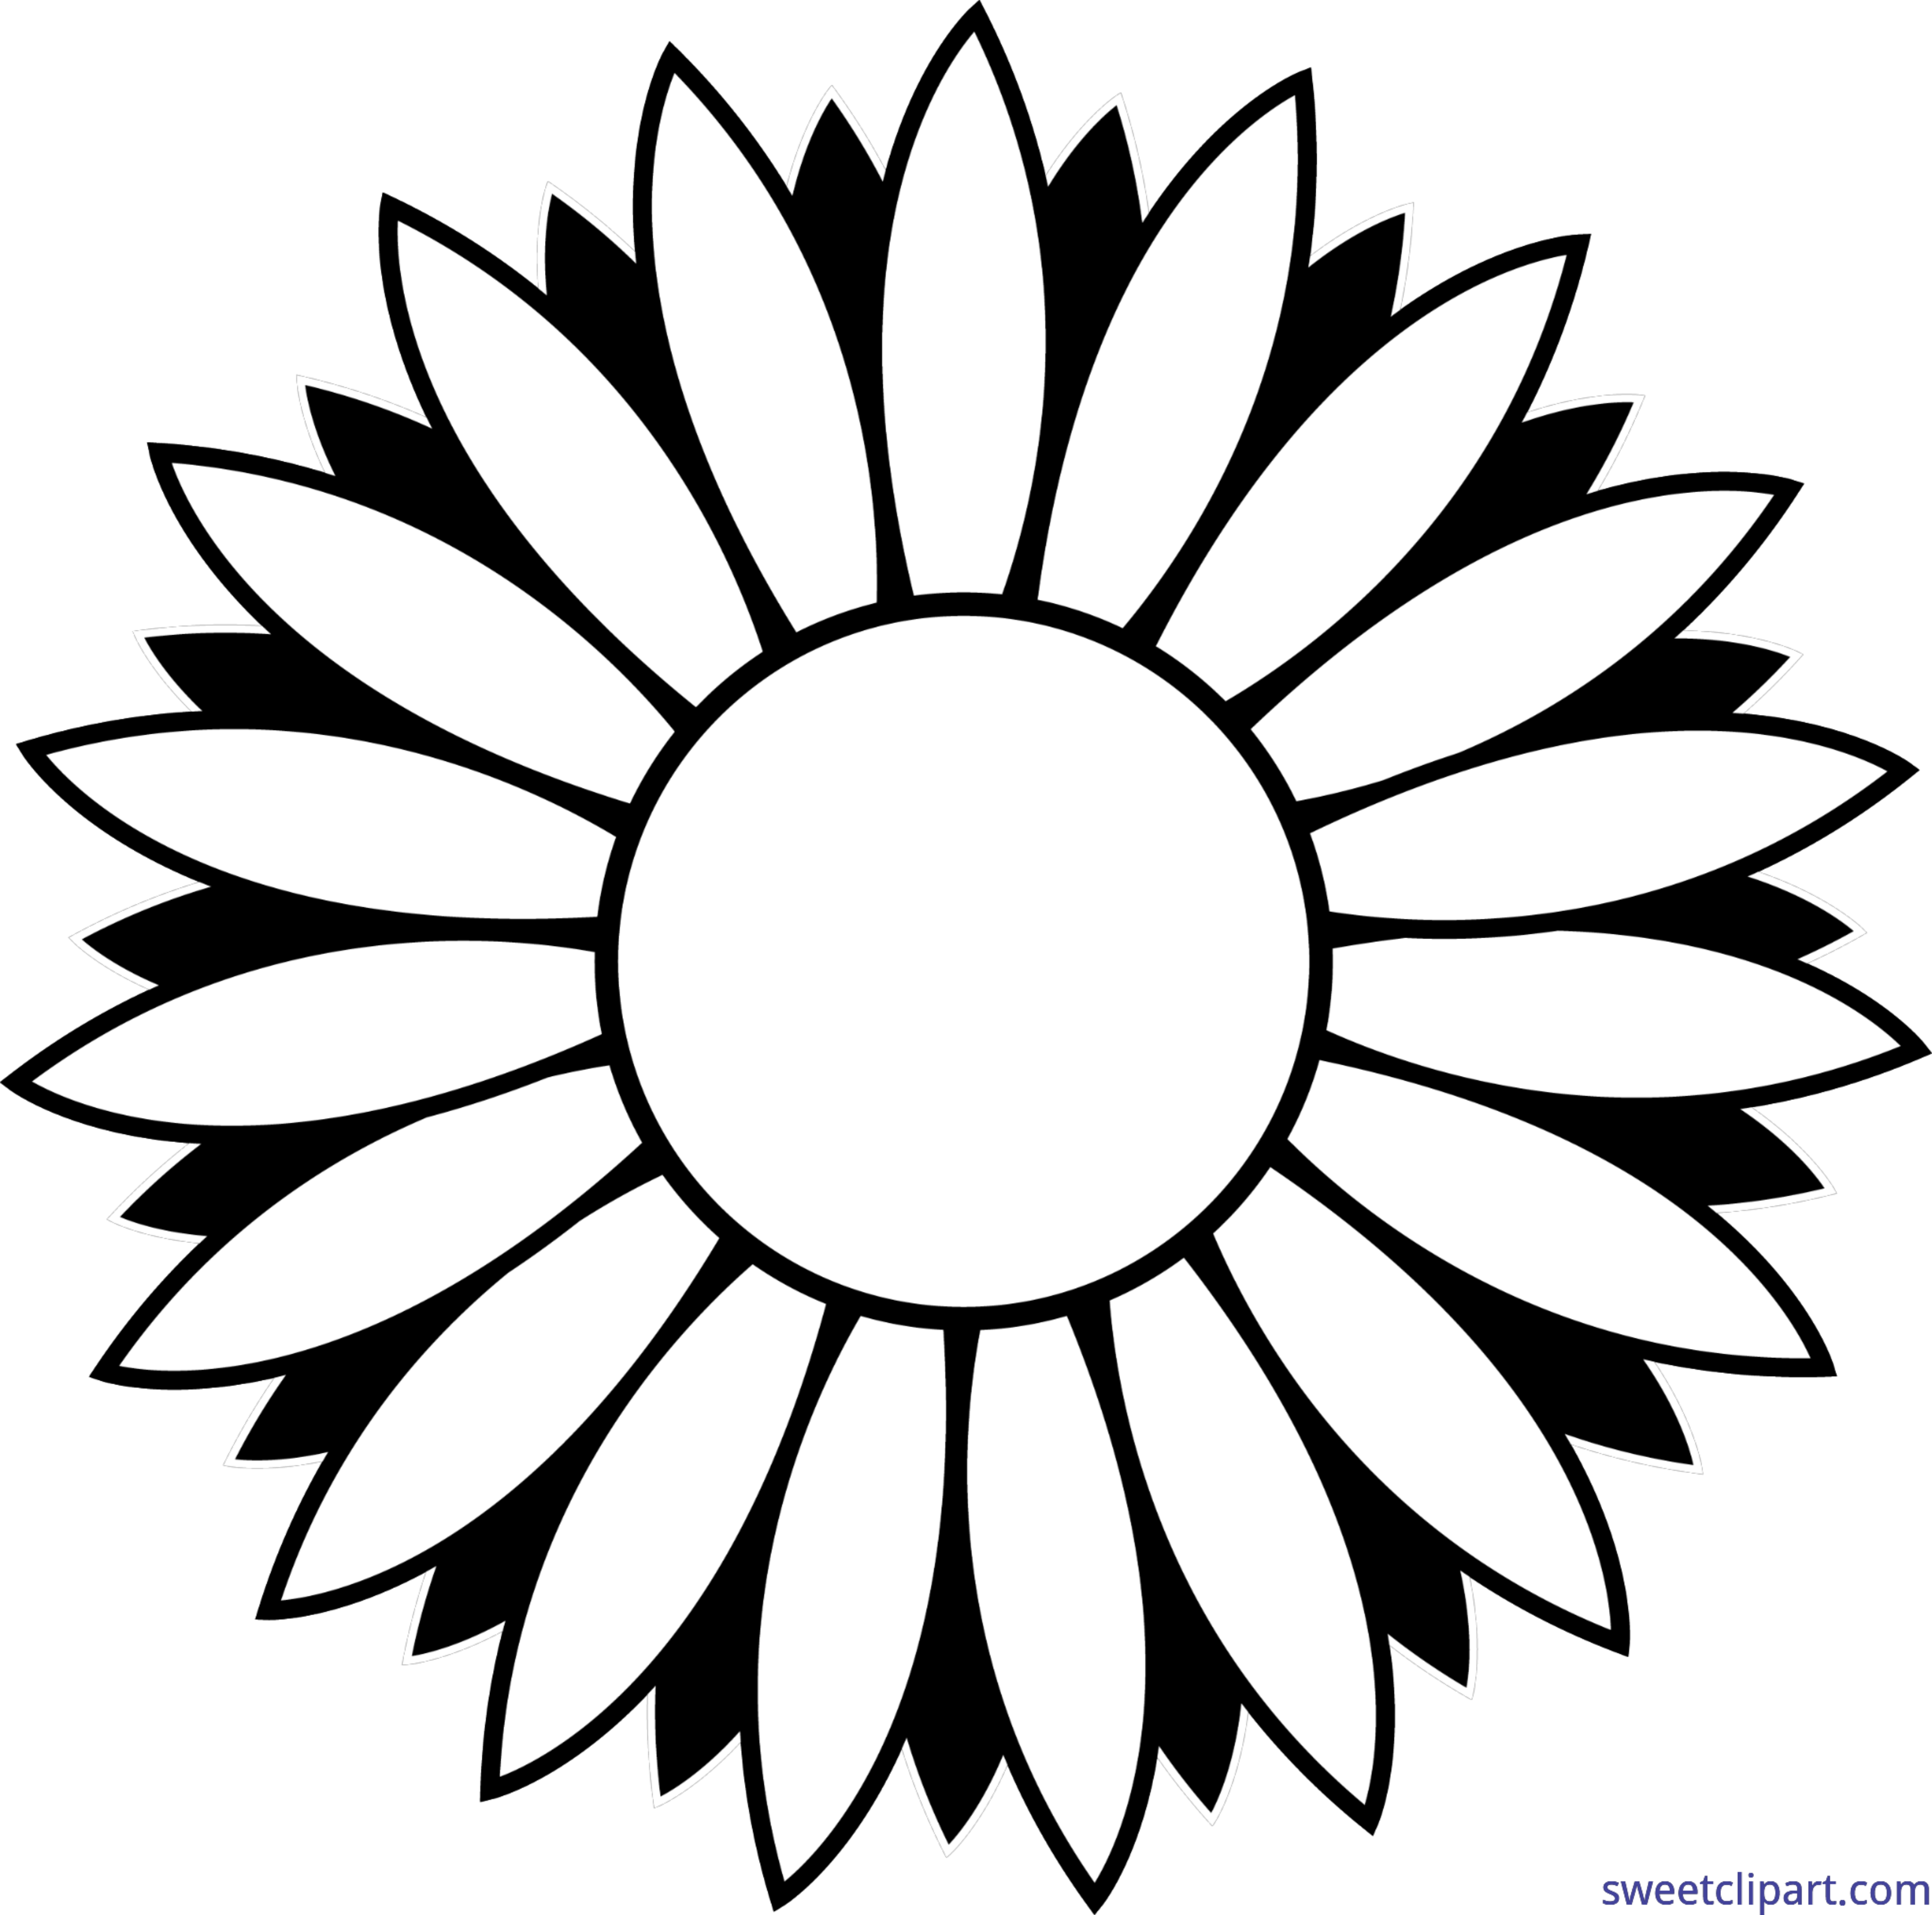 Flower Sunflower Black And White Lineart Clip Art.